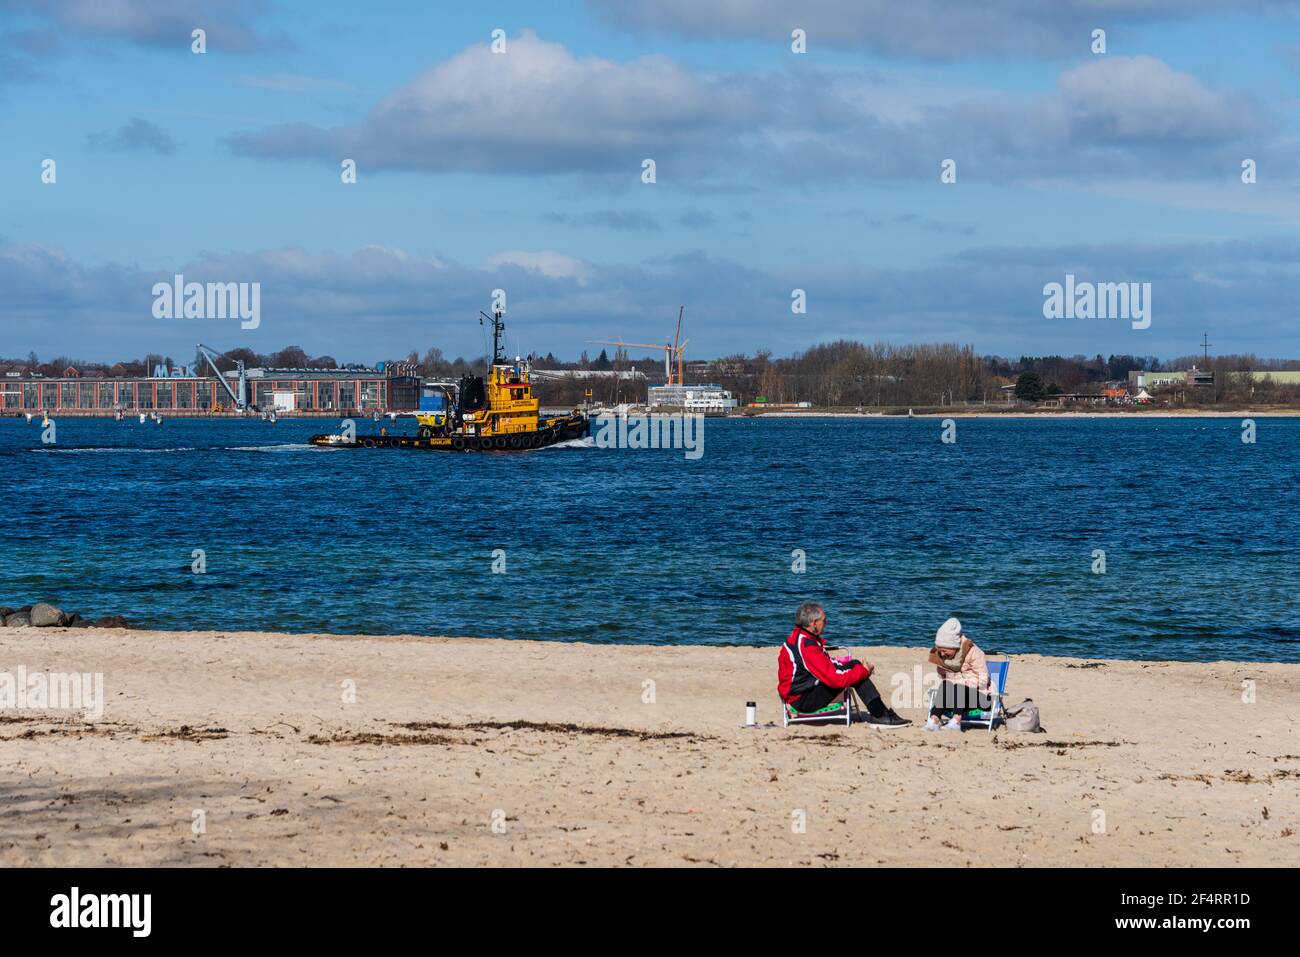 Stand an der Kieler Förde im Frühjahr, ein Paar hat es sich am Wasser gemütlich gemacht, ein Hafenschlepper passiert die Scene Stock Photo